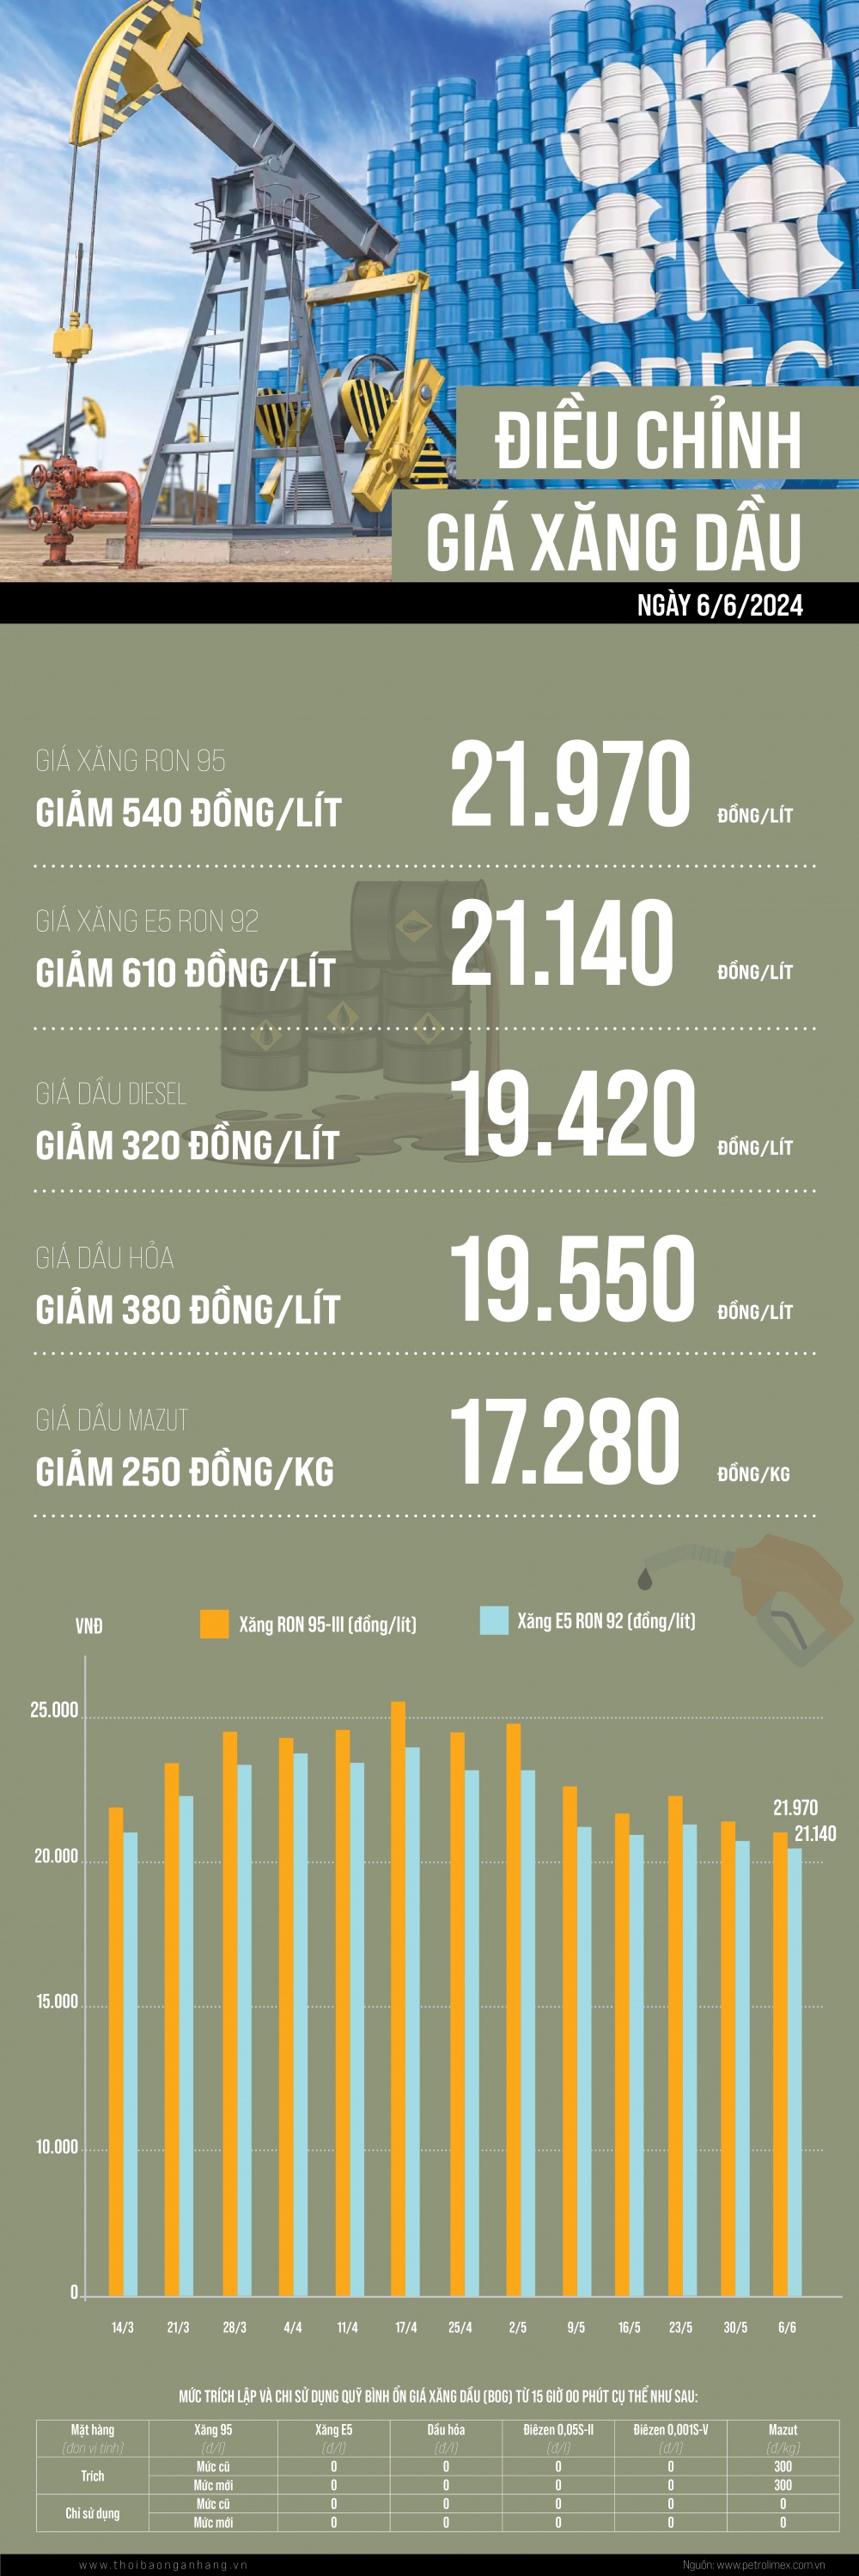 [Infographic] Giá xăng, dầu cùng giảm